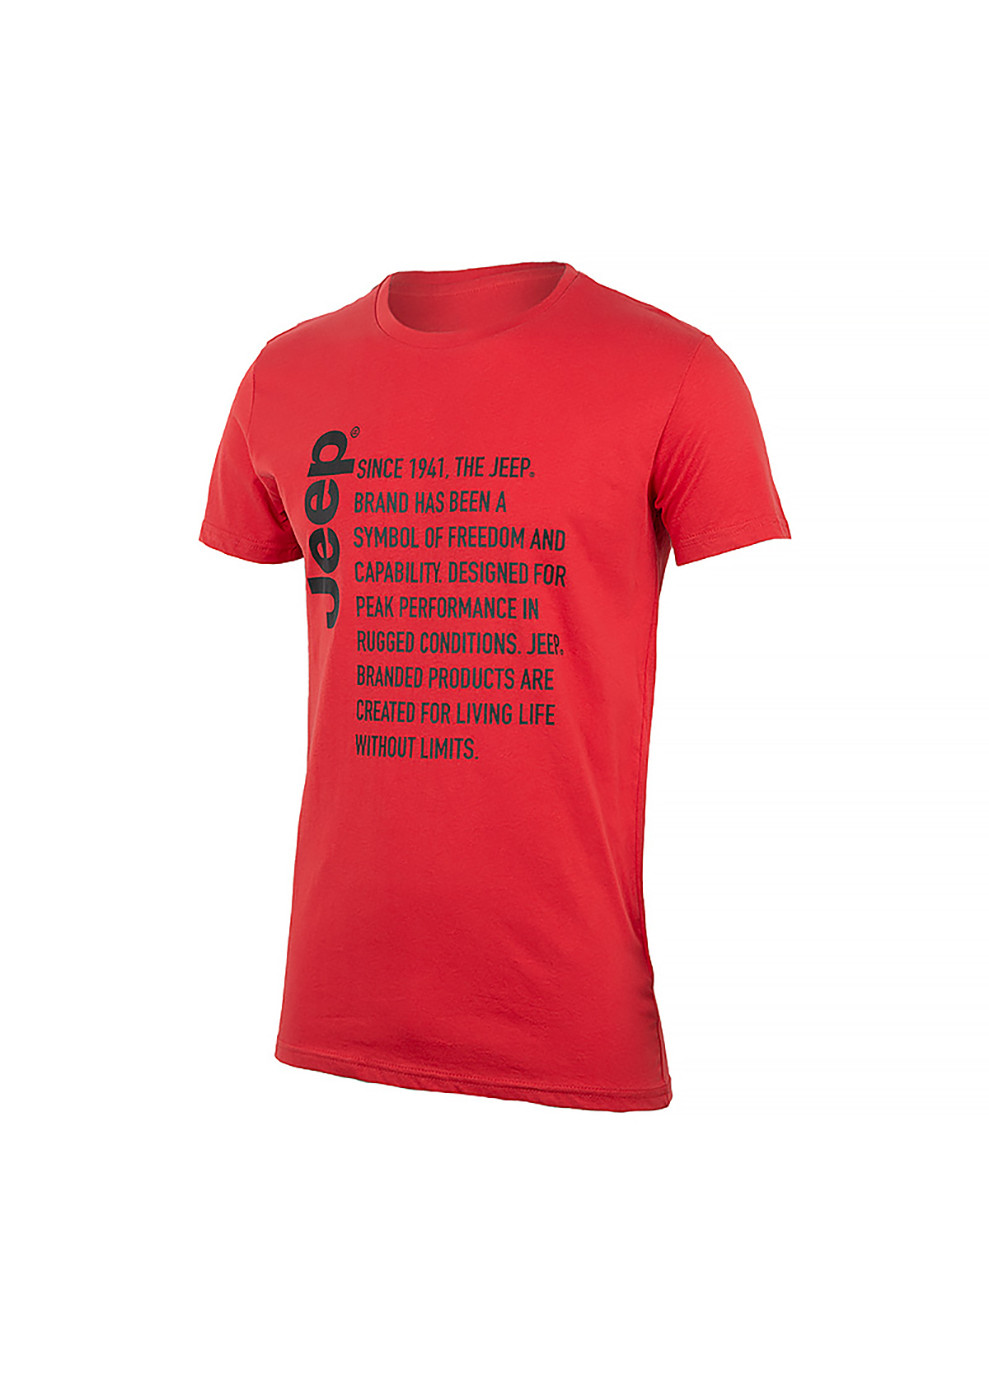 Червона чоловіча футболка t-shirt since 1941 червоний xl (o102591-r699 xl) Jeep